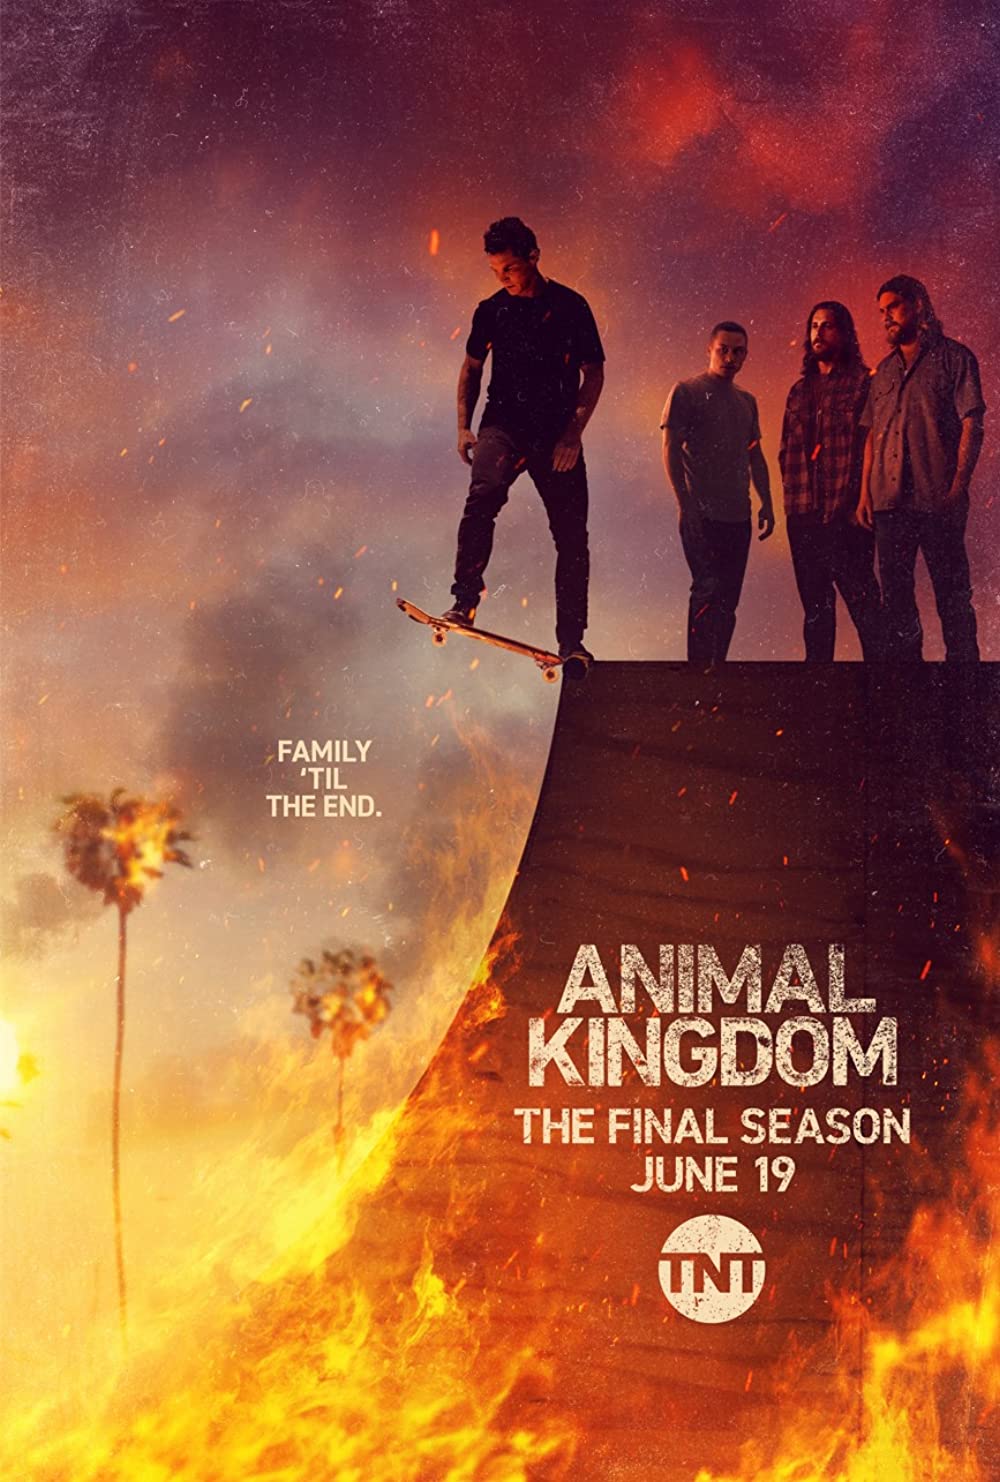 ดูหนังออนไลน์ฟรี Animal Kingdom Season 1 EP.5 แอนนิเมิล คิงด้อม ซีซั่น 1 ตอนที่ 5 (ซับไทย)